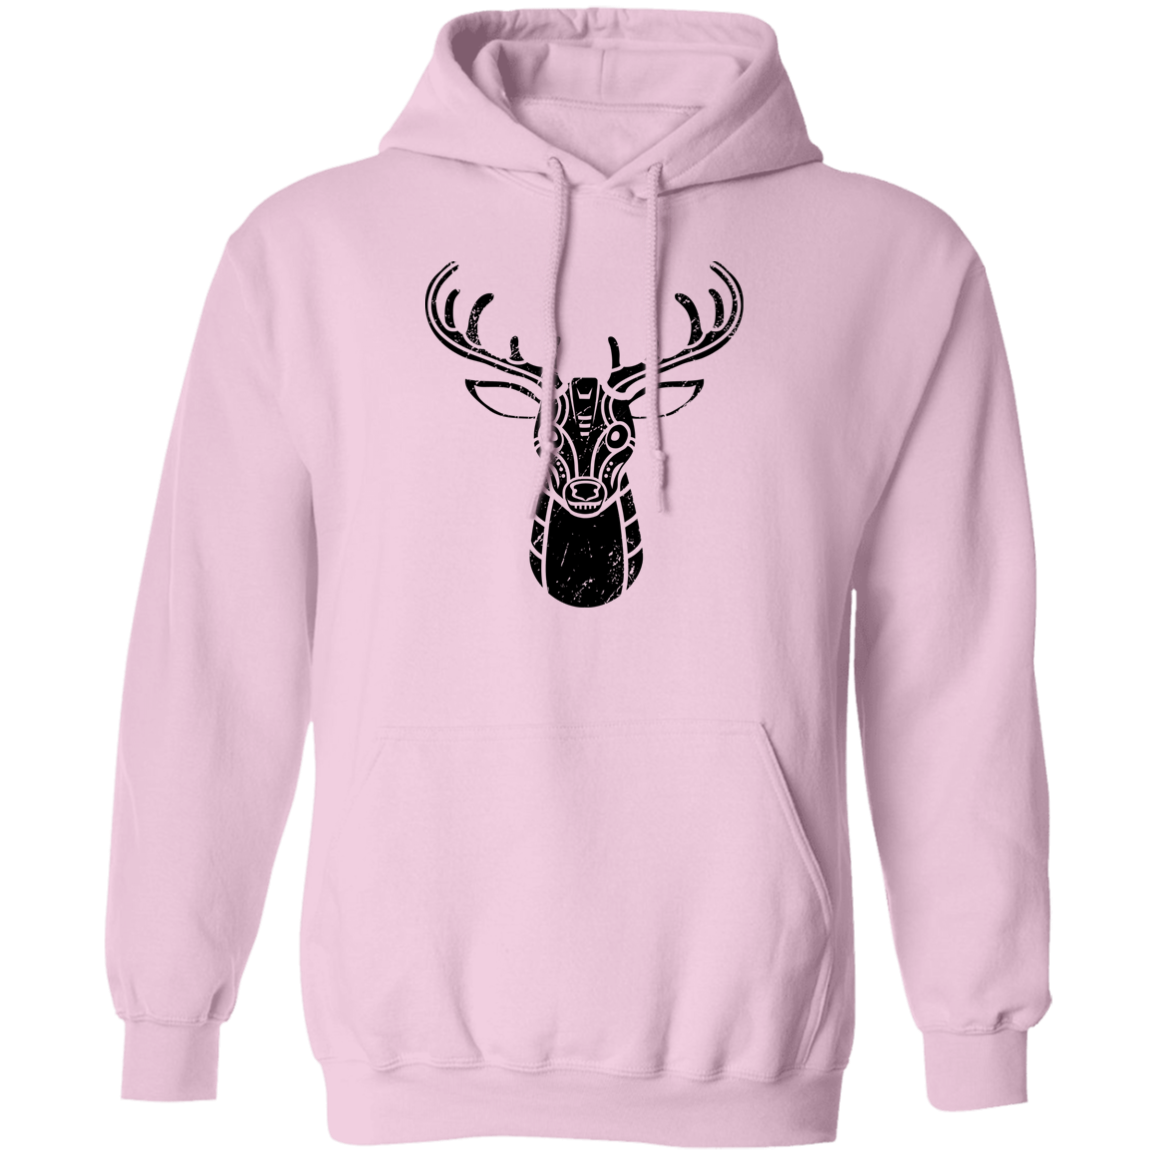 Black Distressed Emblem Hoodies for Adults (Deer/Stag)